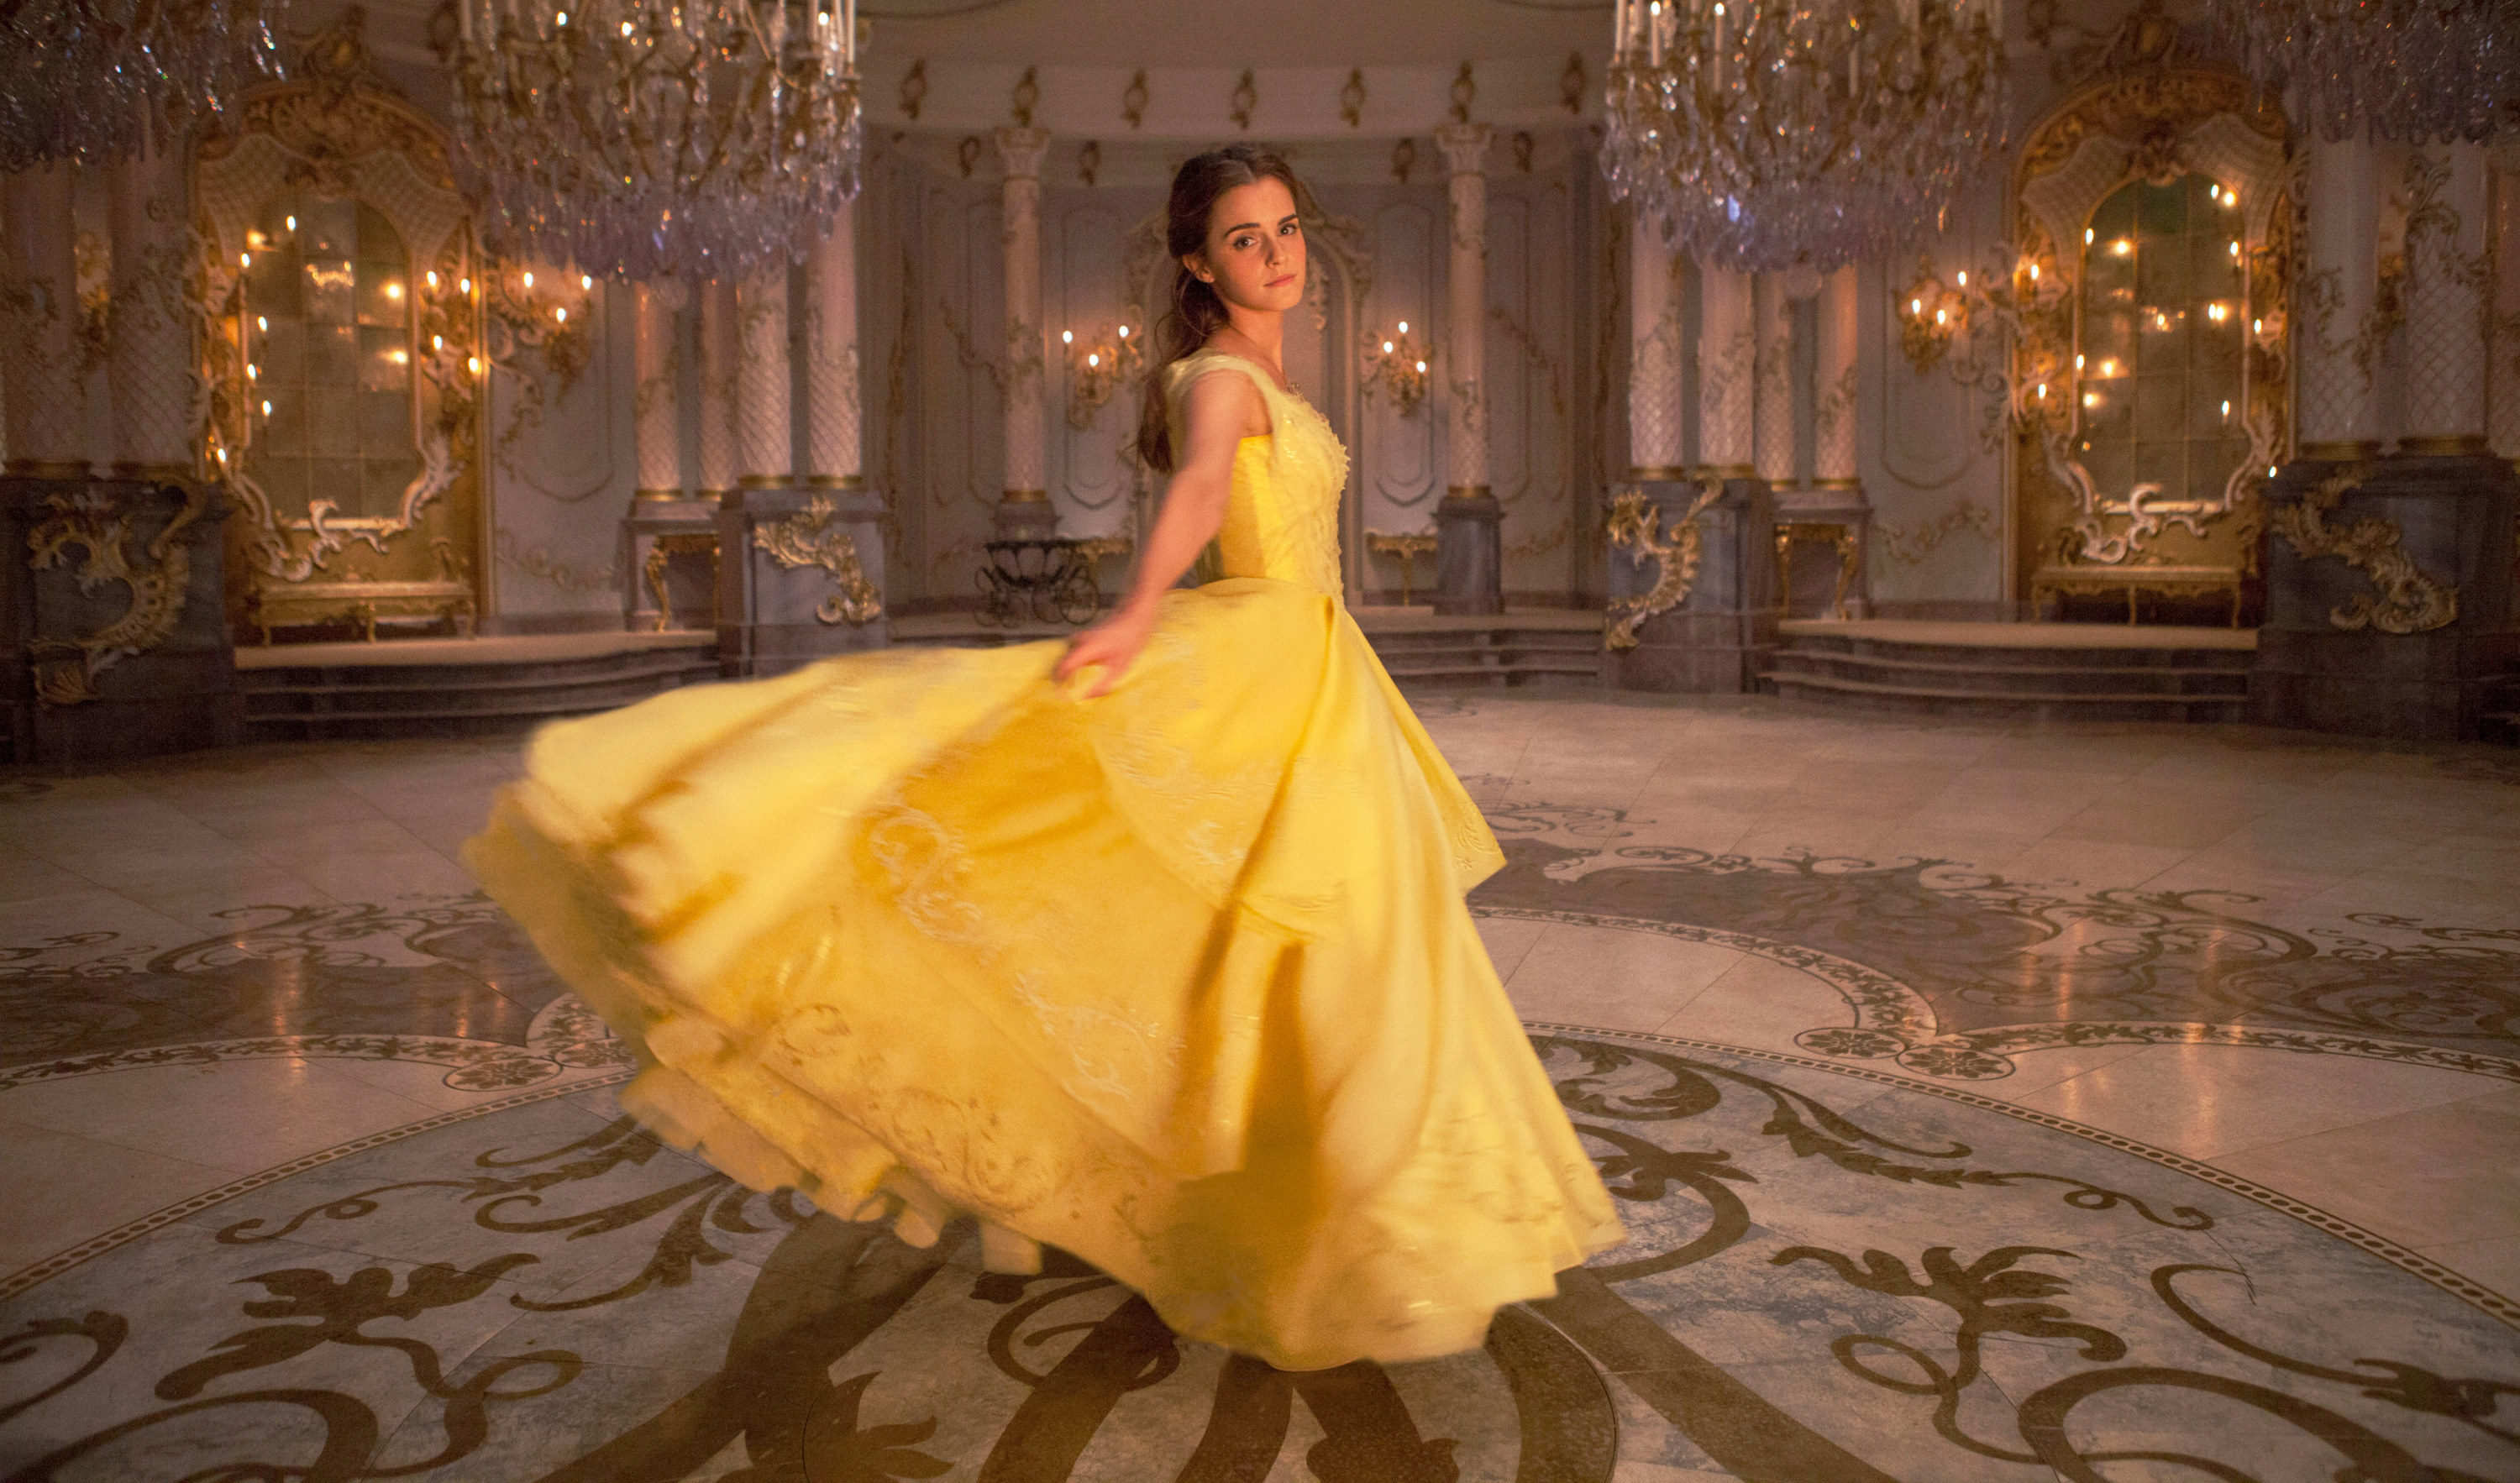 Belle twirls in her iconic ballgown